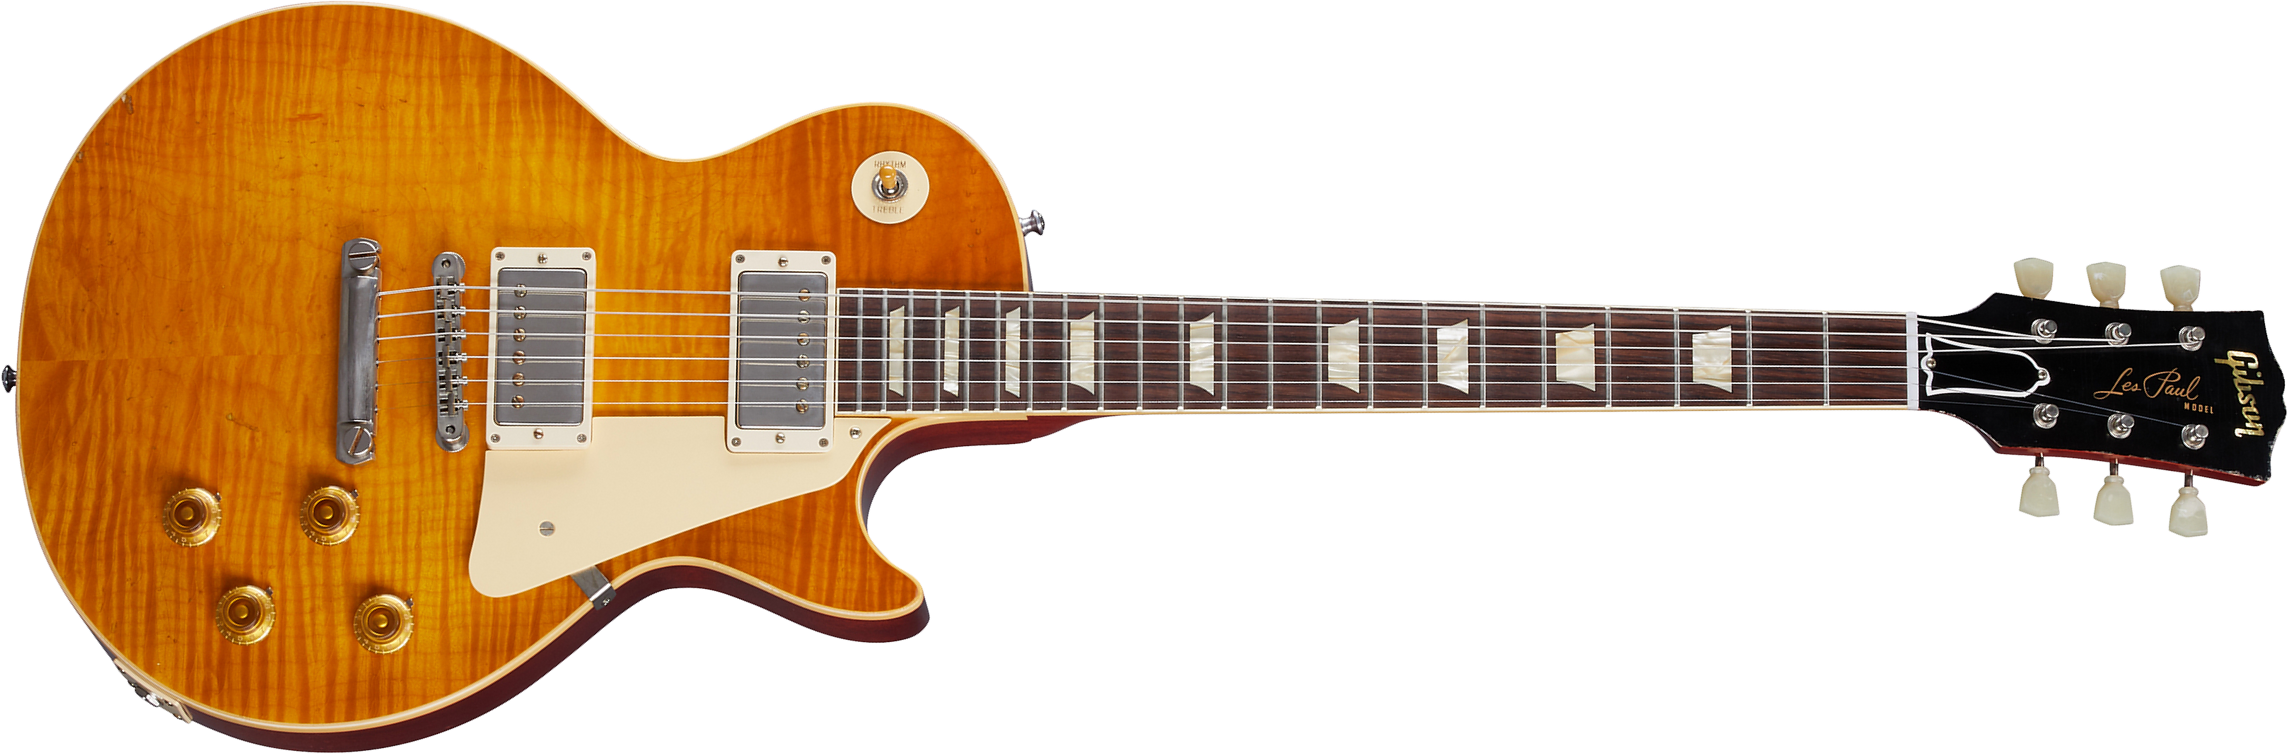 Gibson Custom Shop Murphy Lab Les Paul Standard 1959 Reissue 2h Ht Rw - Light Aged Dirty Lemon - Guitarra eléctrica de corte único. - Main picture